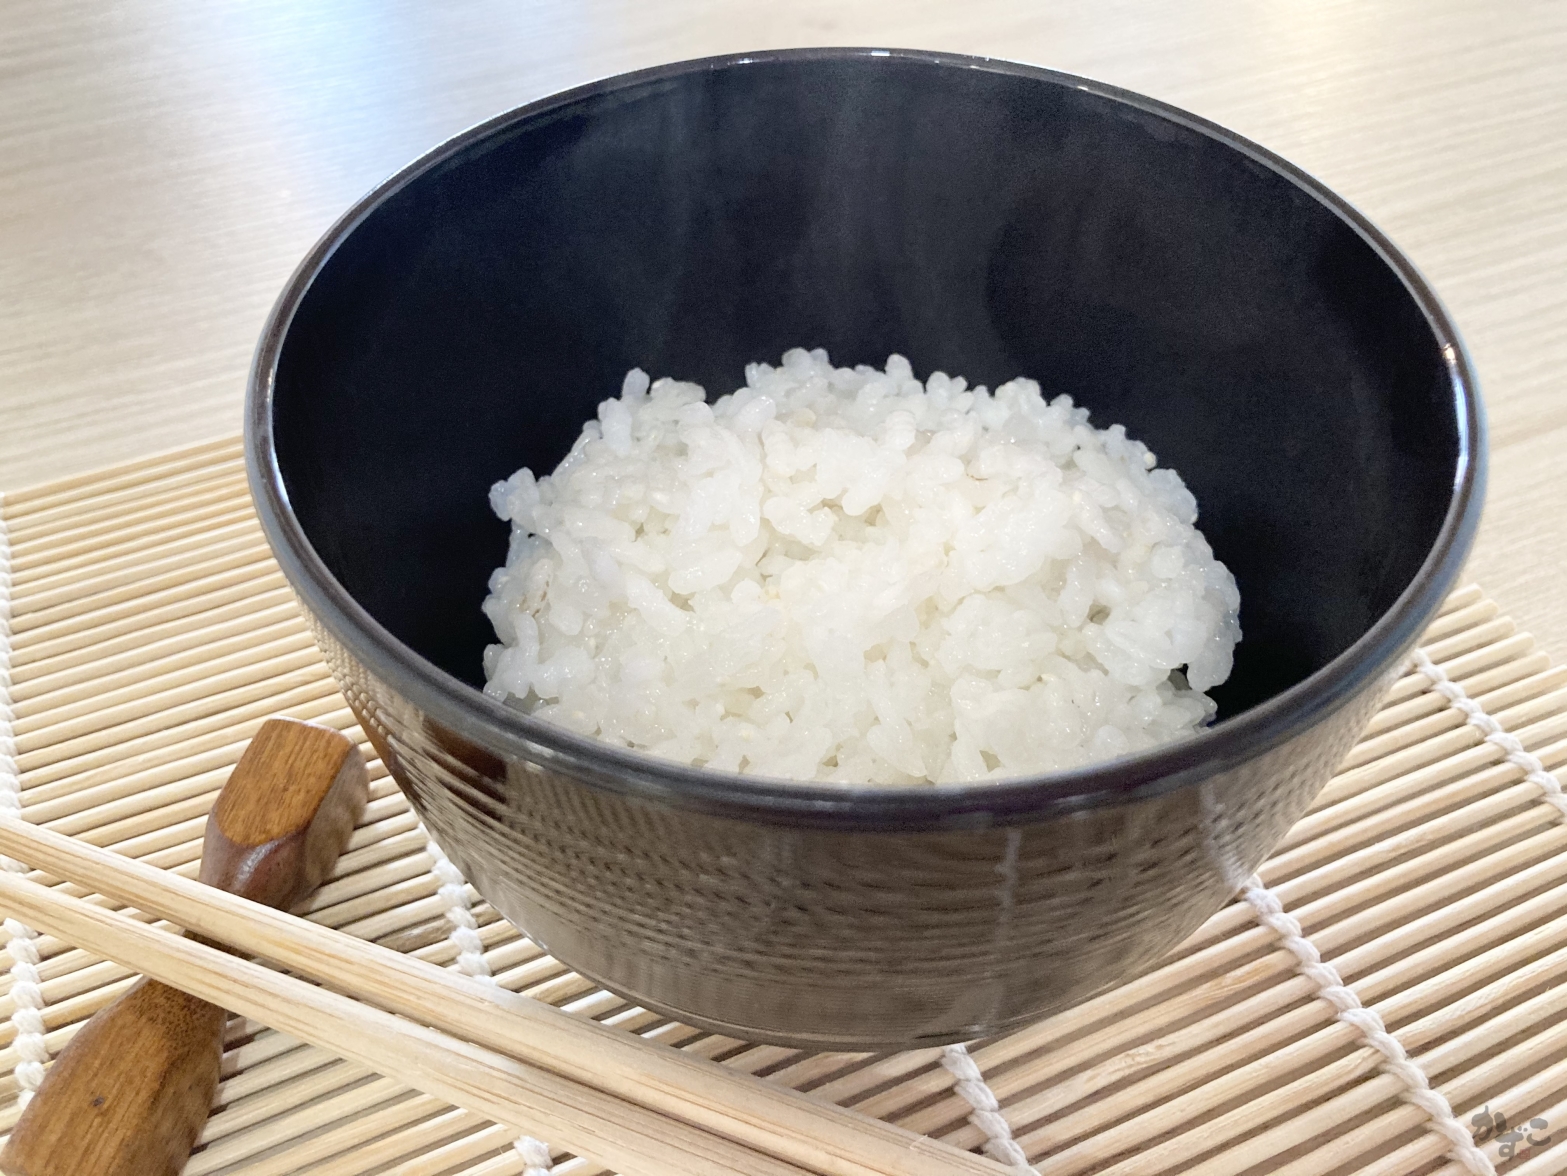 https://kazukosrecipes.files.wordpress.com/2021/01/ogn-cover-rice-w-logo-opaque.jpg?w=1568